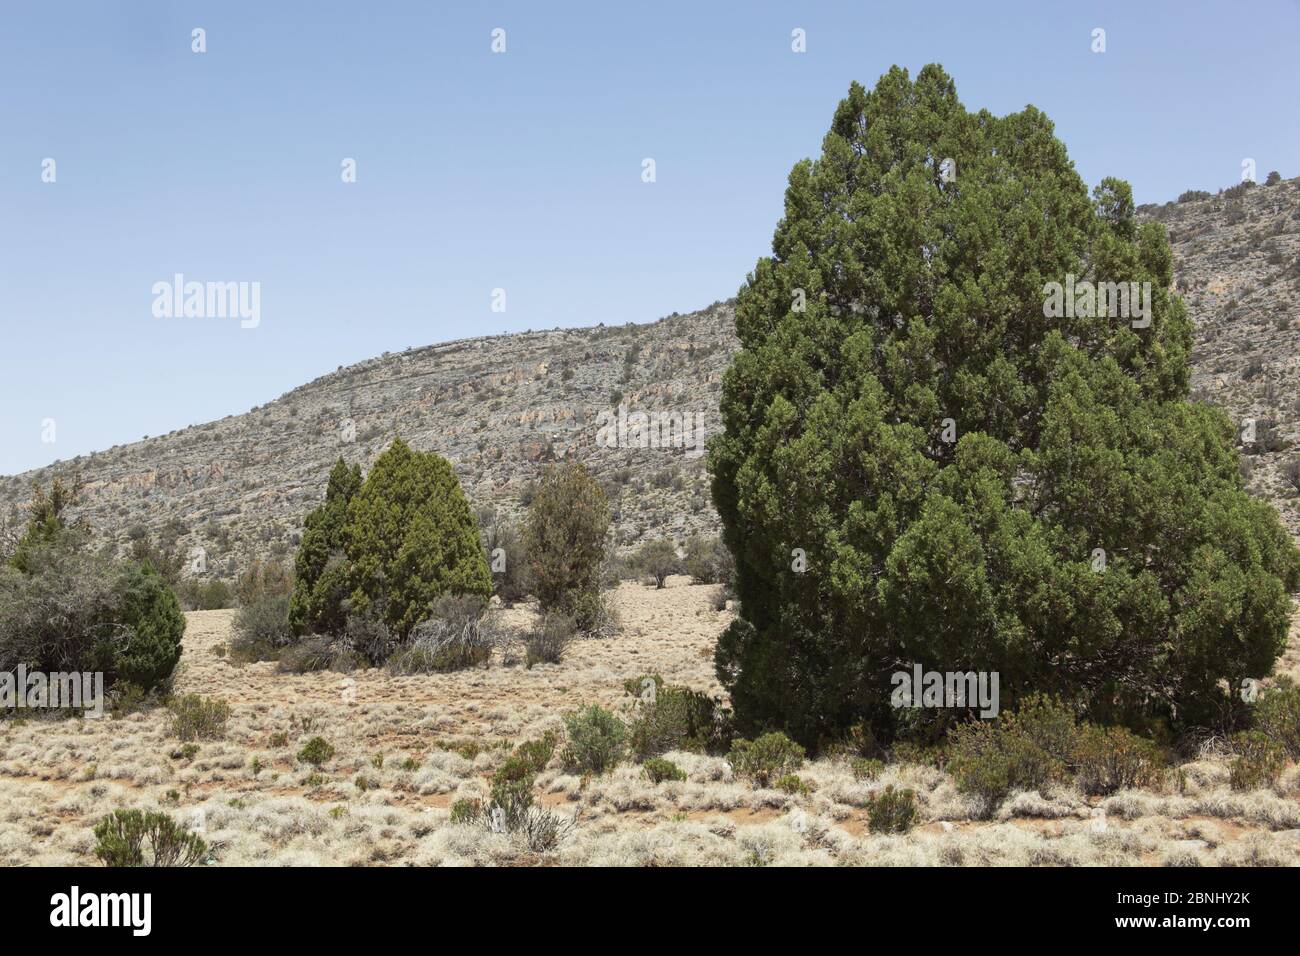 Persian juniper (Juniperus excelsa polycarpes) on plateau, Oman, April Stock Photo